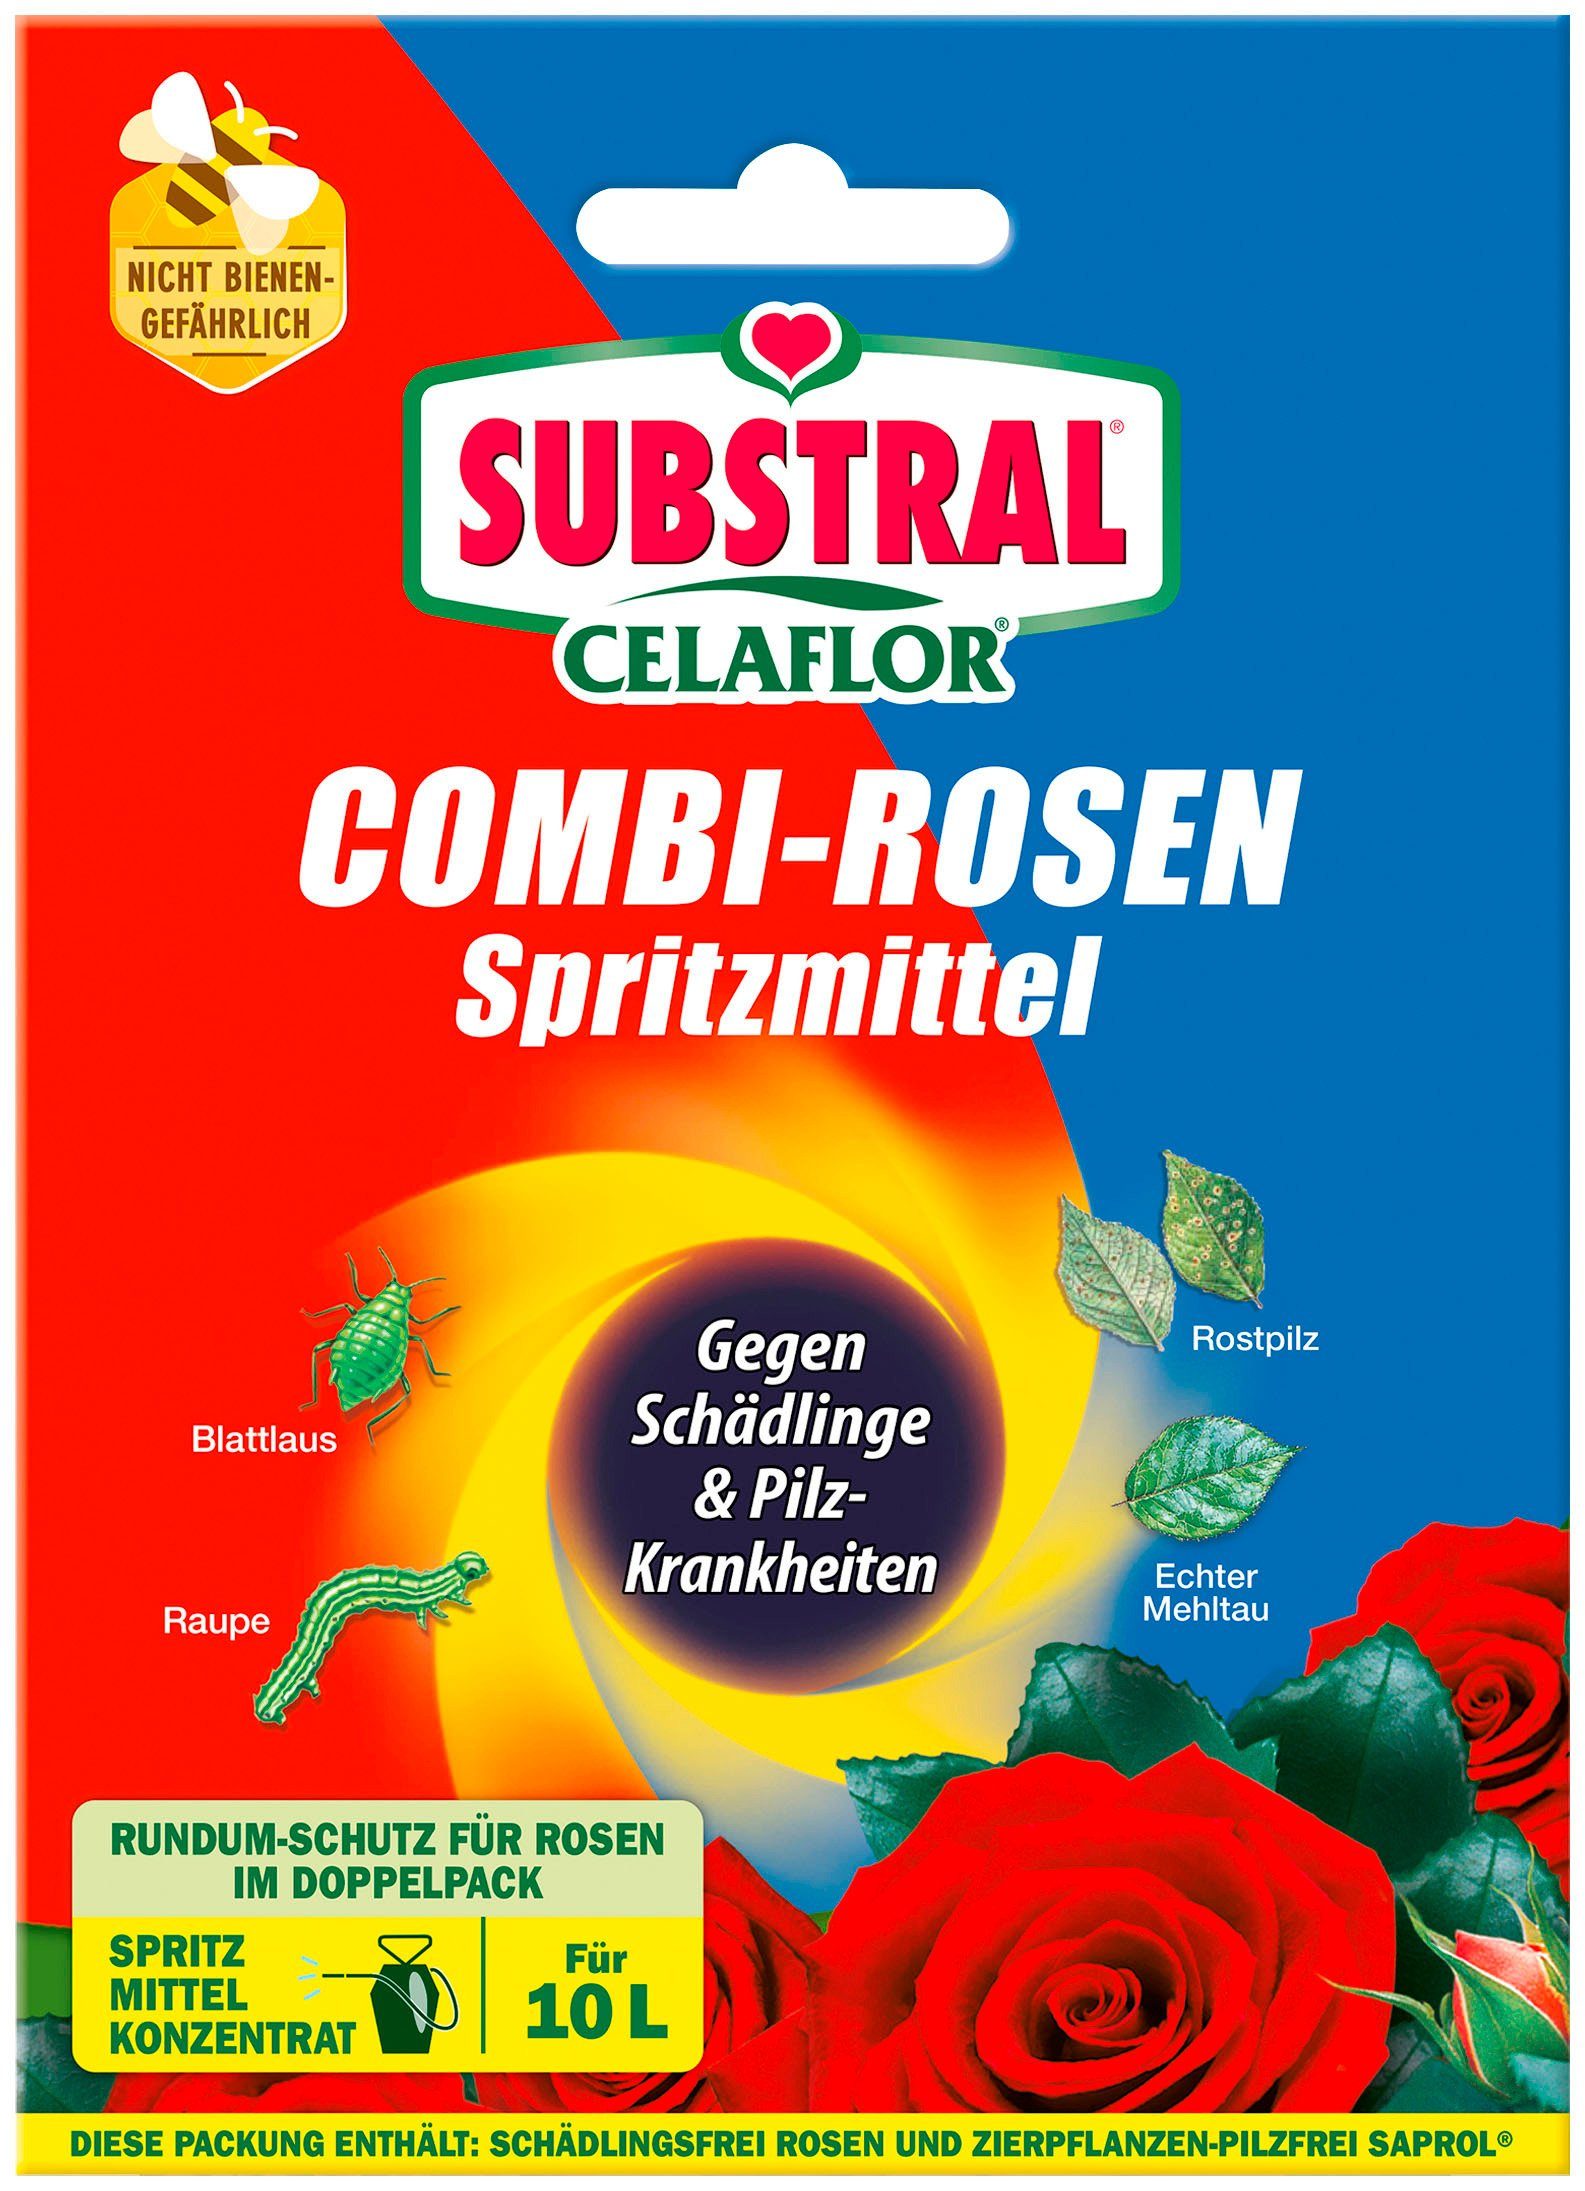 Celaflor Substral Insektenvernichtungsmittel Combi-Rosen Spritzmittel, Konzentrat 1x 15 ml + 2x 4 ml, für 10 Liter